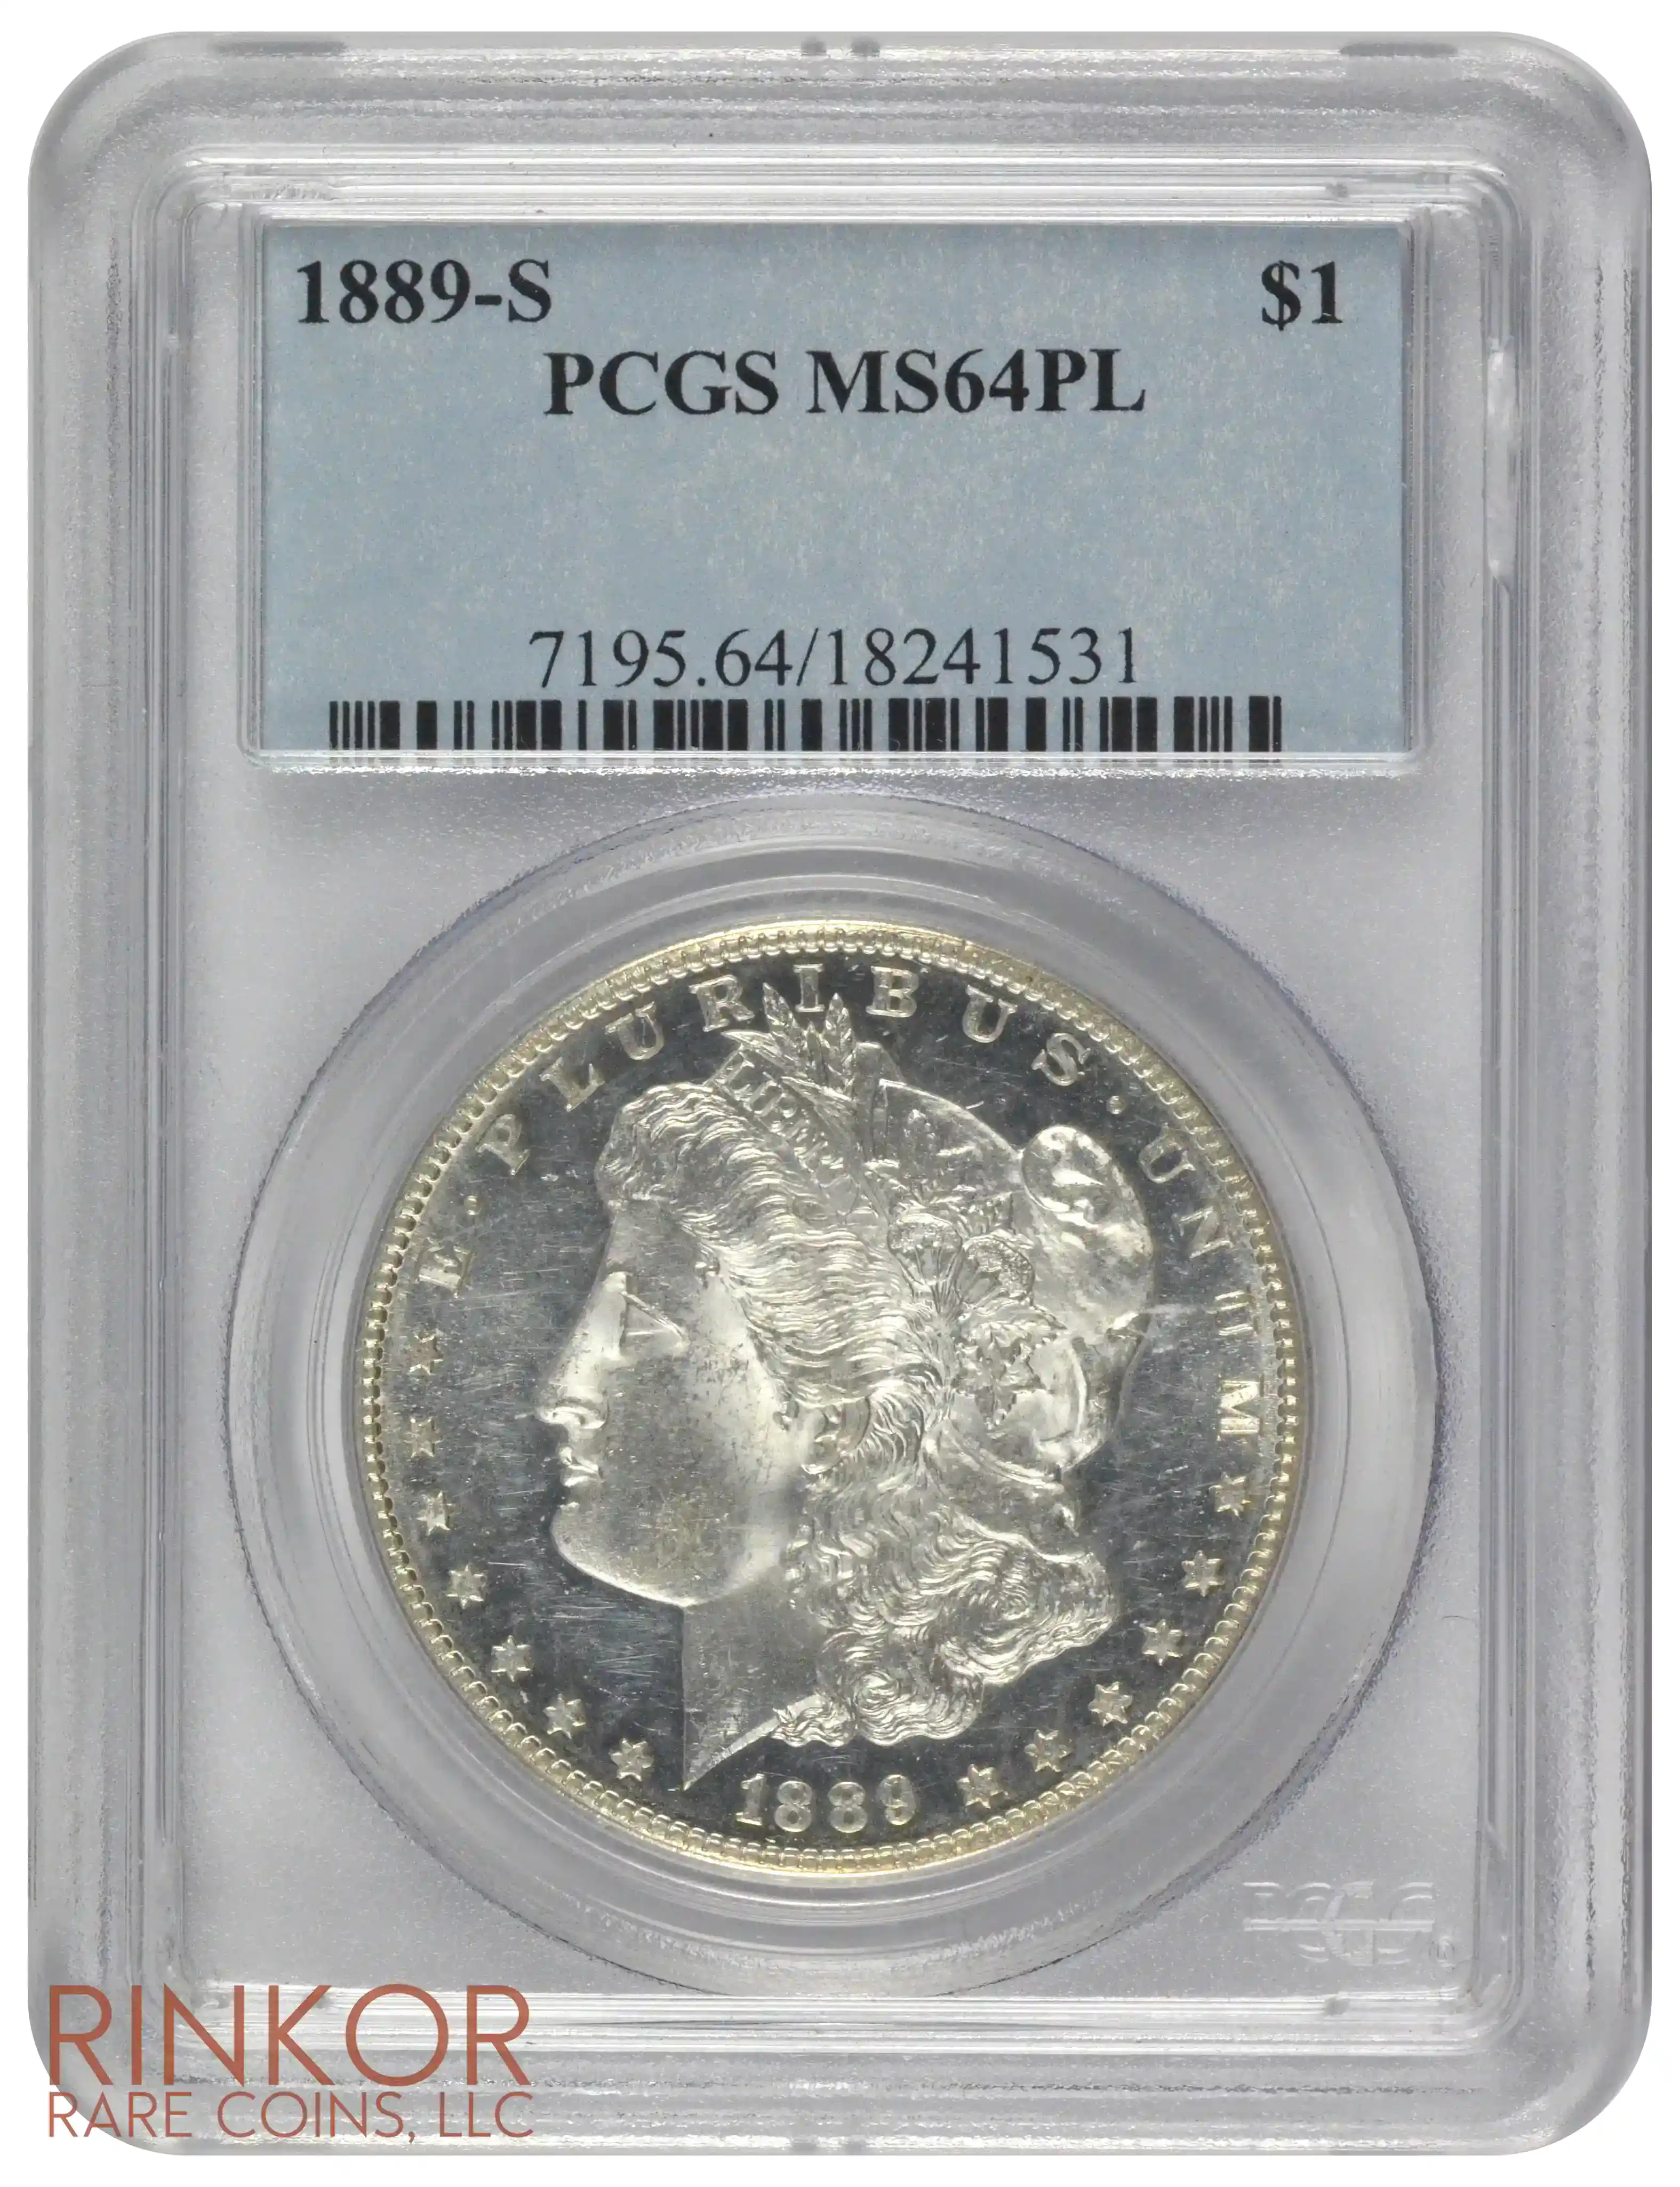 1889-S $1 PCGS MS 64 PL